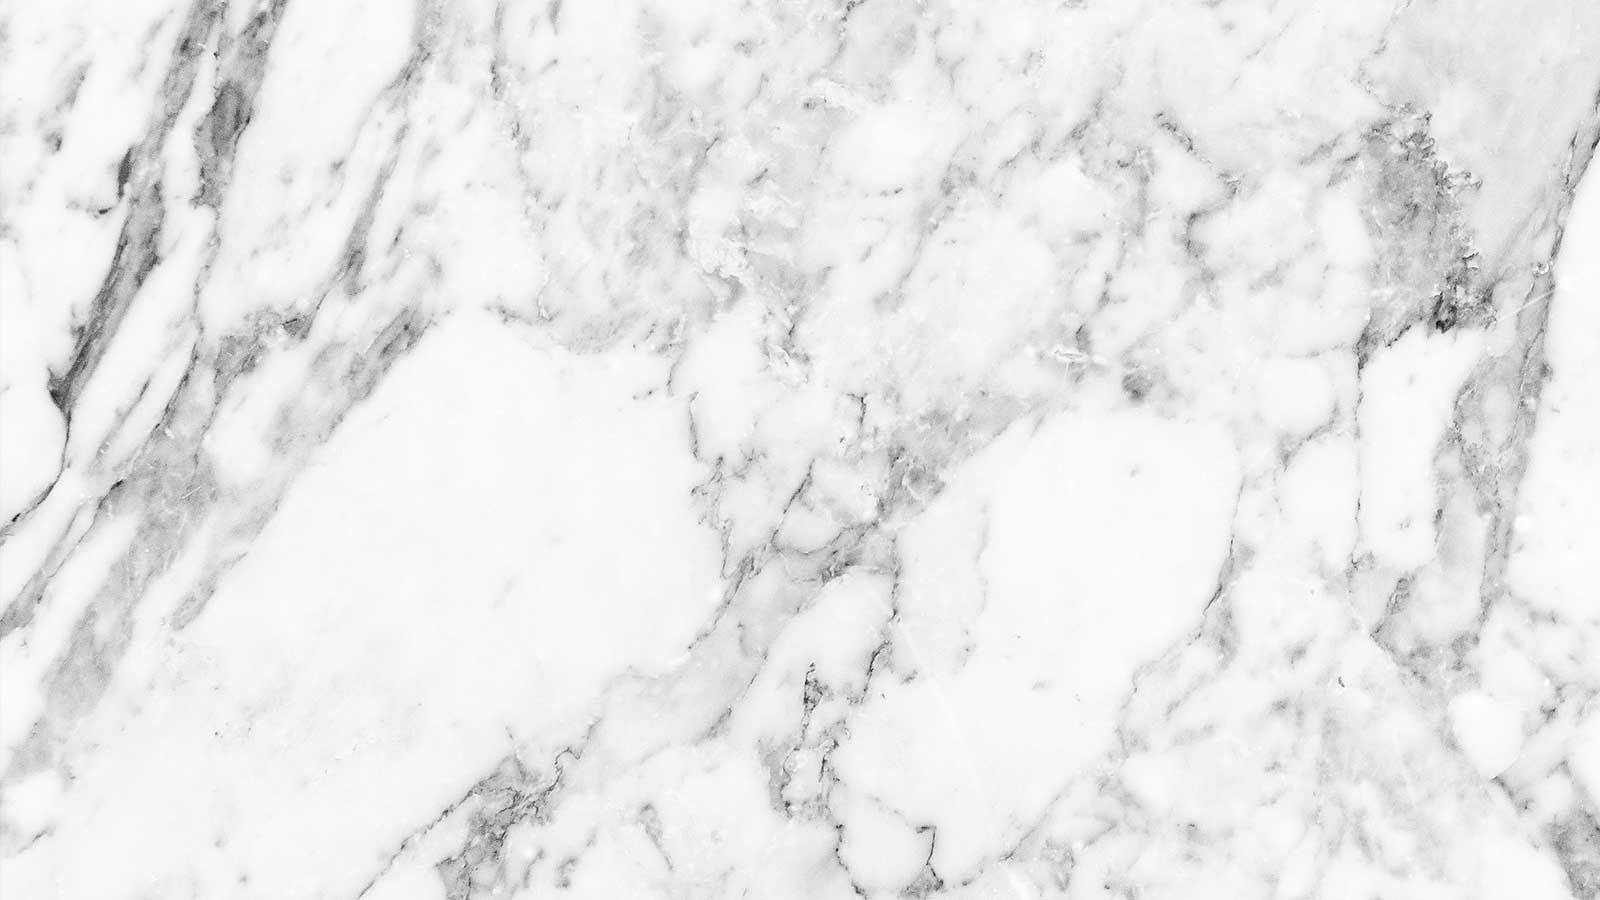 Đá marble đã trở thành xu hướng mới trong thế giới trang trí nội thất và còn cả trong thế giới công nghệ. Người dùng máy tính xách tay có thể tìm thấy những bức ảnh đẹp mắt với phong cách này để trang trí cho chiếc laptop của mình, tạo thành một không gian làm việc đẳng cấp và tinh tế.